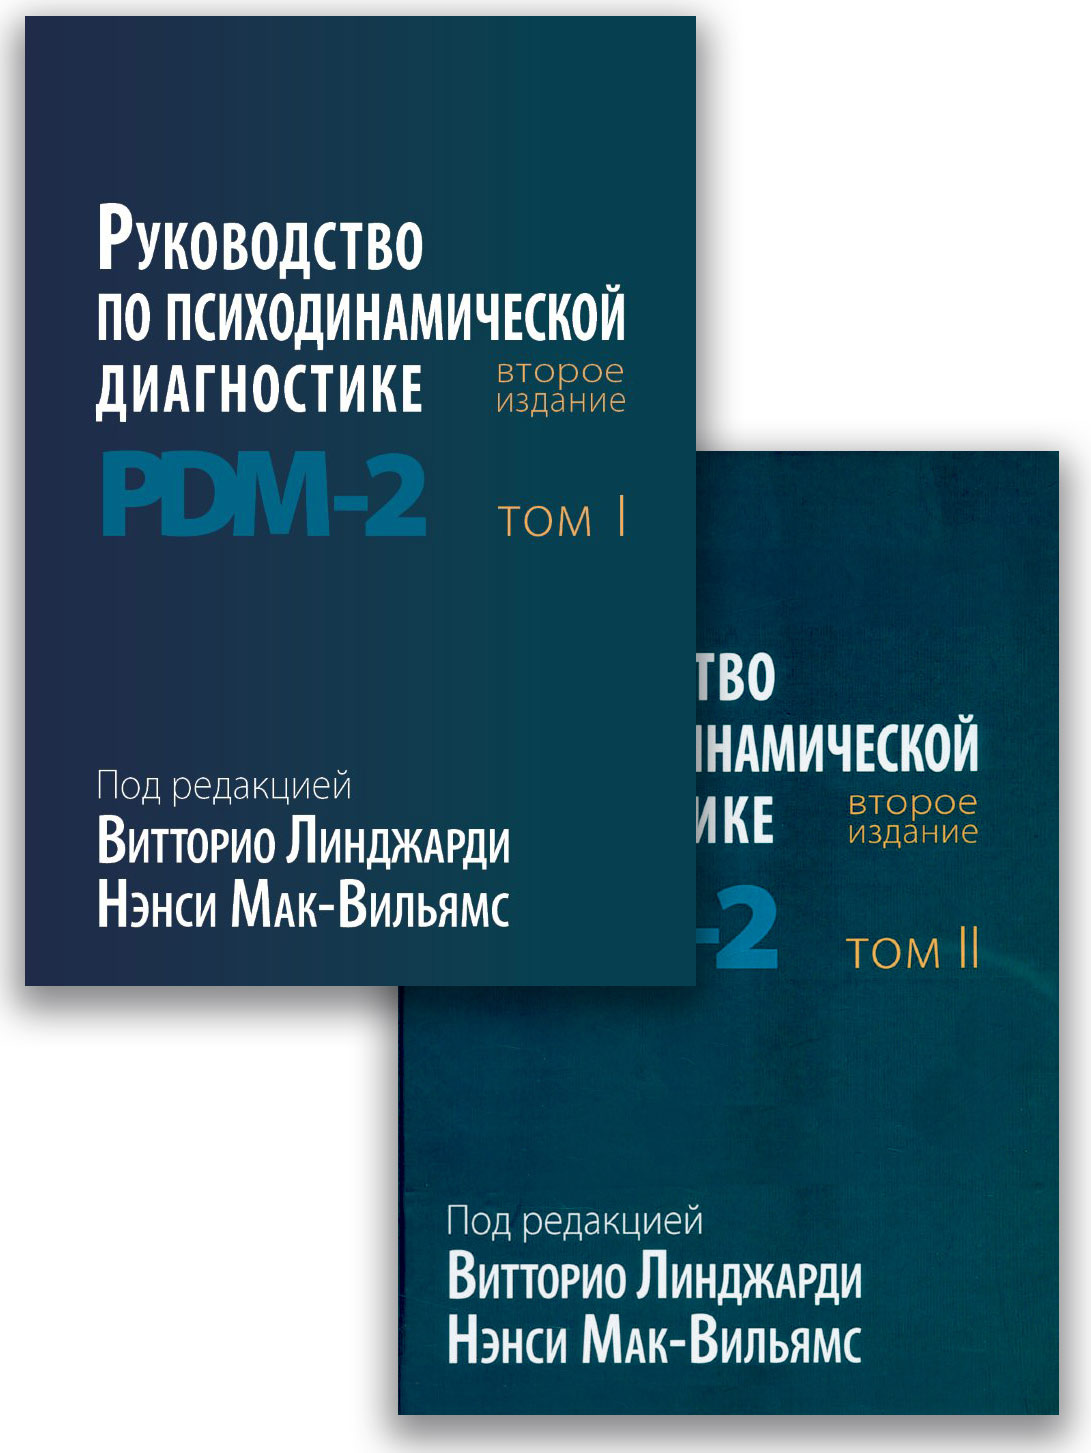 Руководство по психодинамической диагностике PDM-2, в двух томах